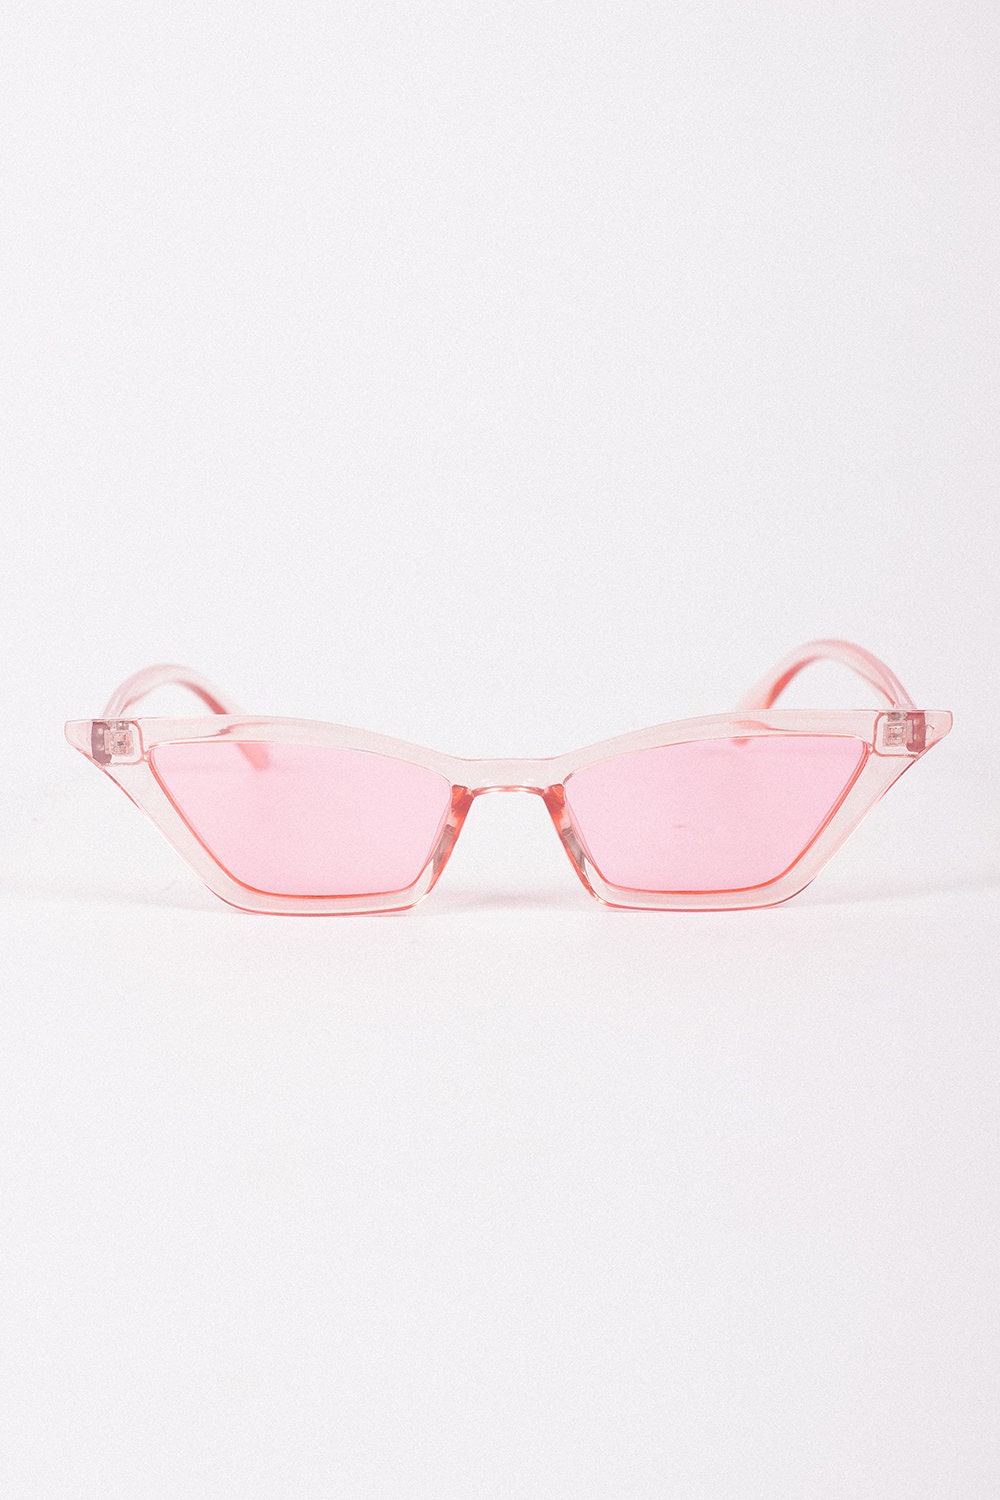 Pink Sunglasses 90s Pink Sunglasses 80s Pink Sunglasses -  Sweden